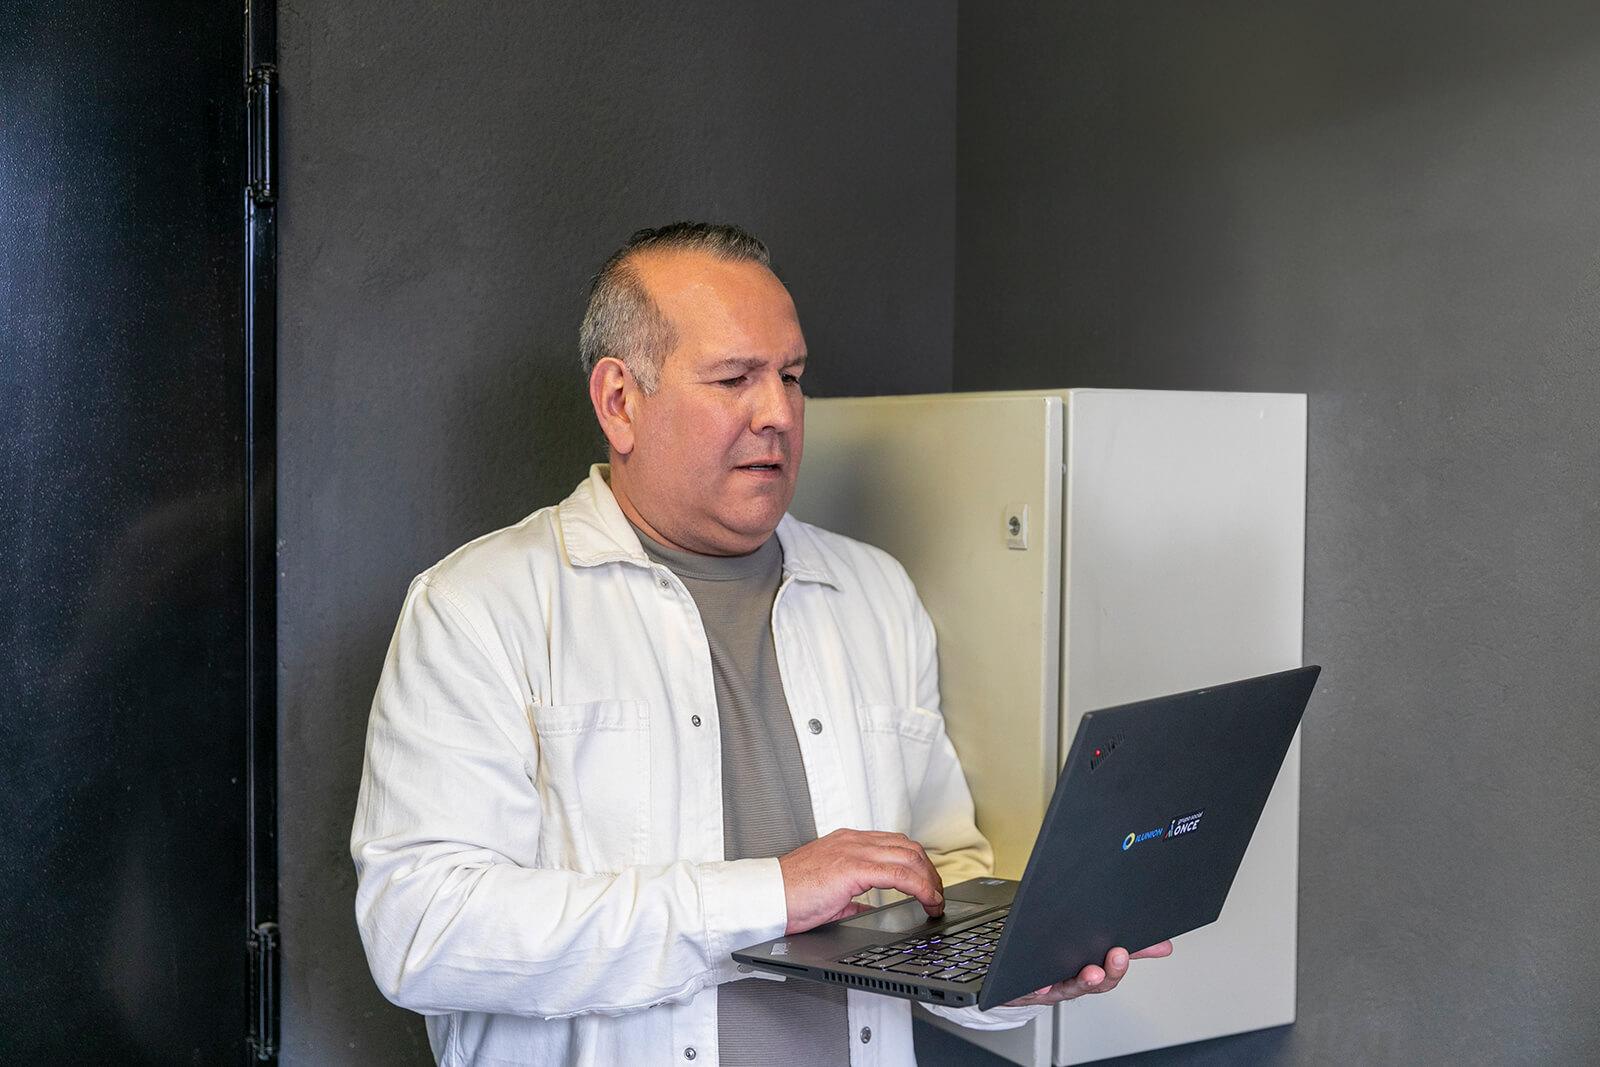 Antonio Suárez treballant amb un ordinador al costat dels servidors.